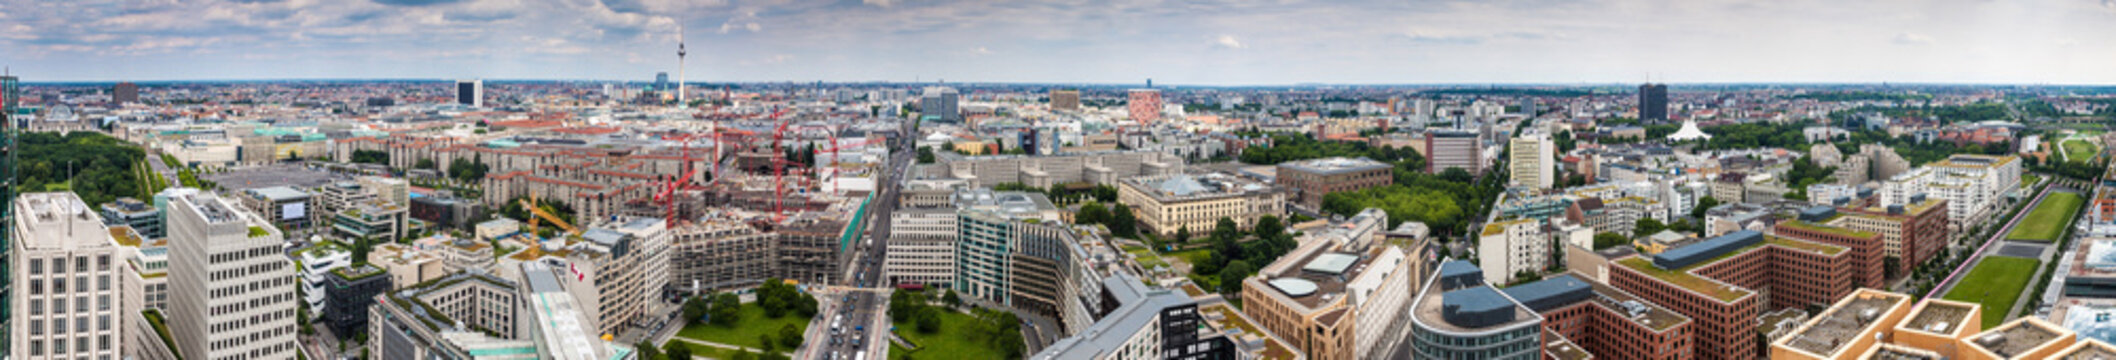 Panorama of Berlin